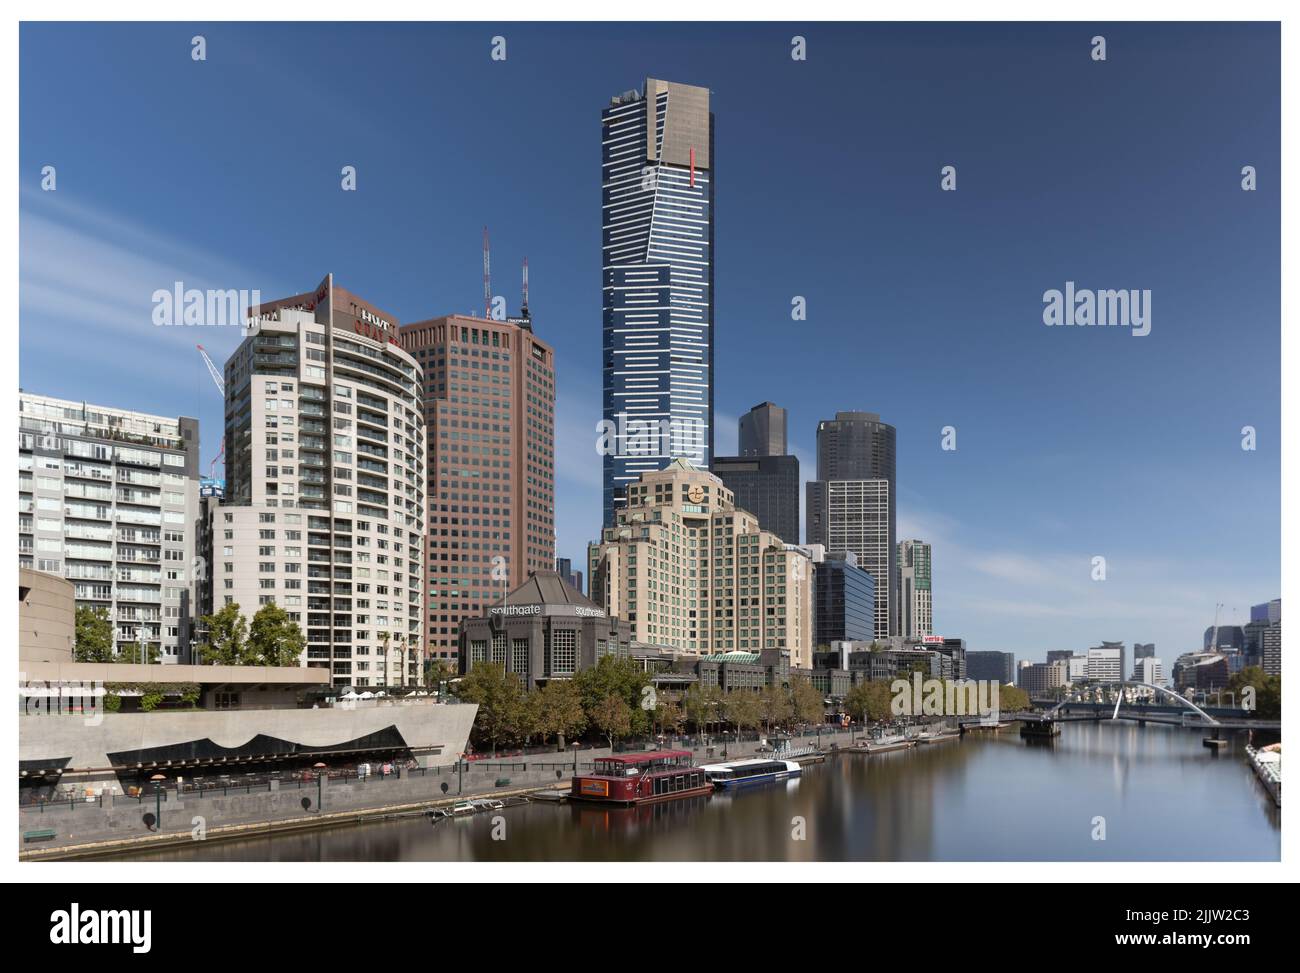 Vue panoramique sur la Yarra River de Melbourne et les bâtiments de Southbank bordant la rive Banque D'Images